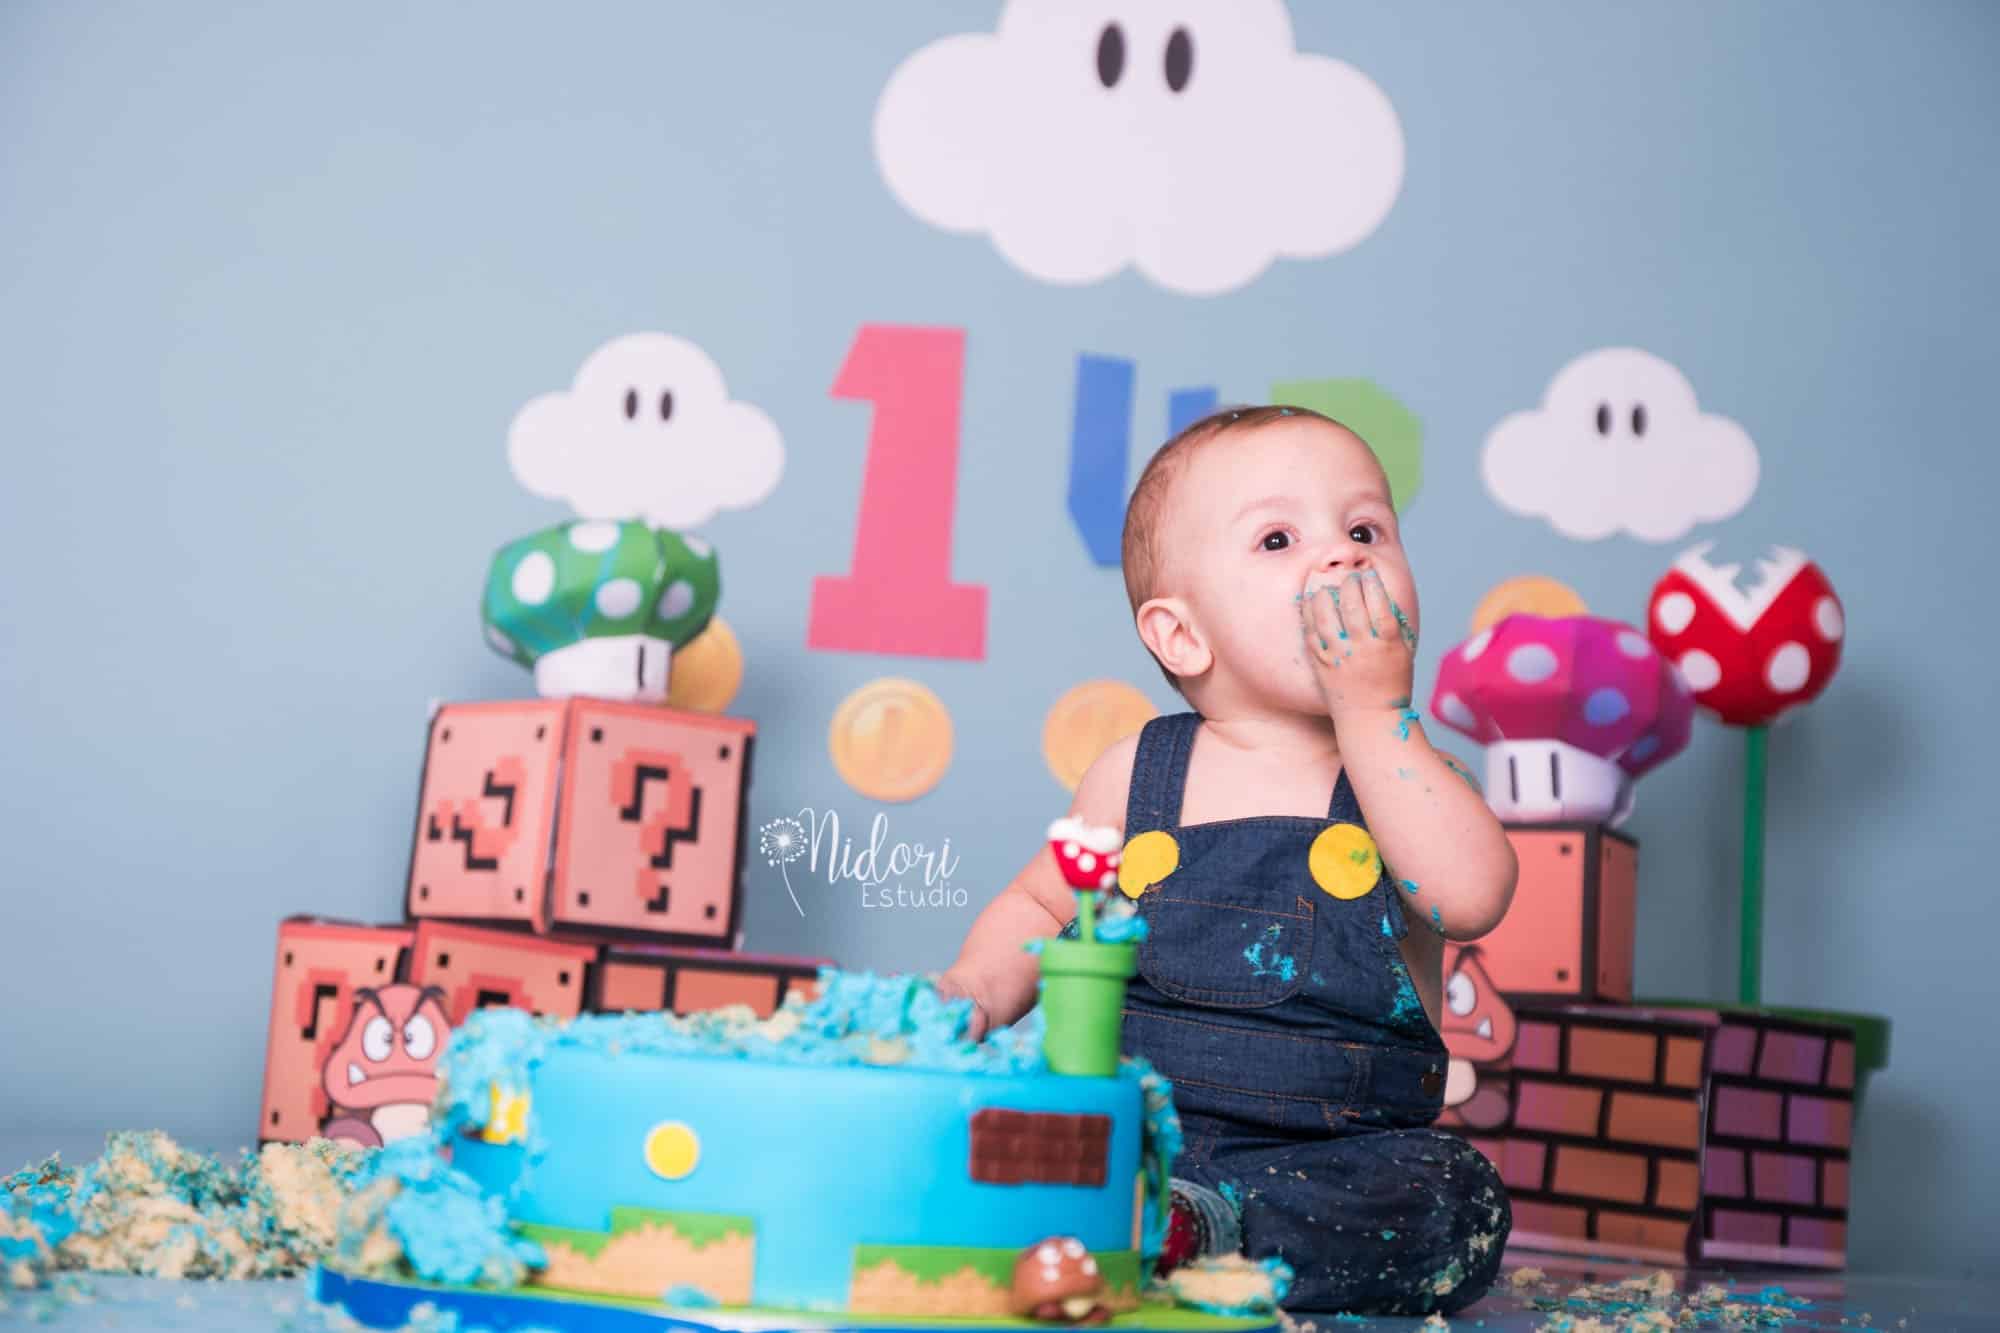 Bebé de 1 año en un estudio fotográfico con un pastel y globos